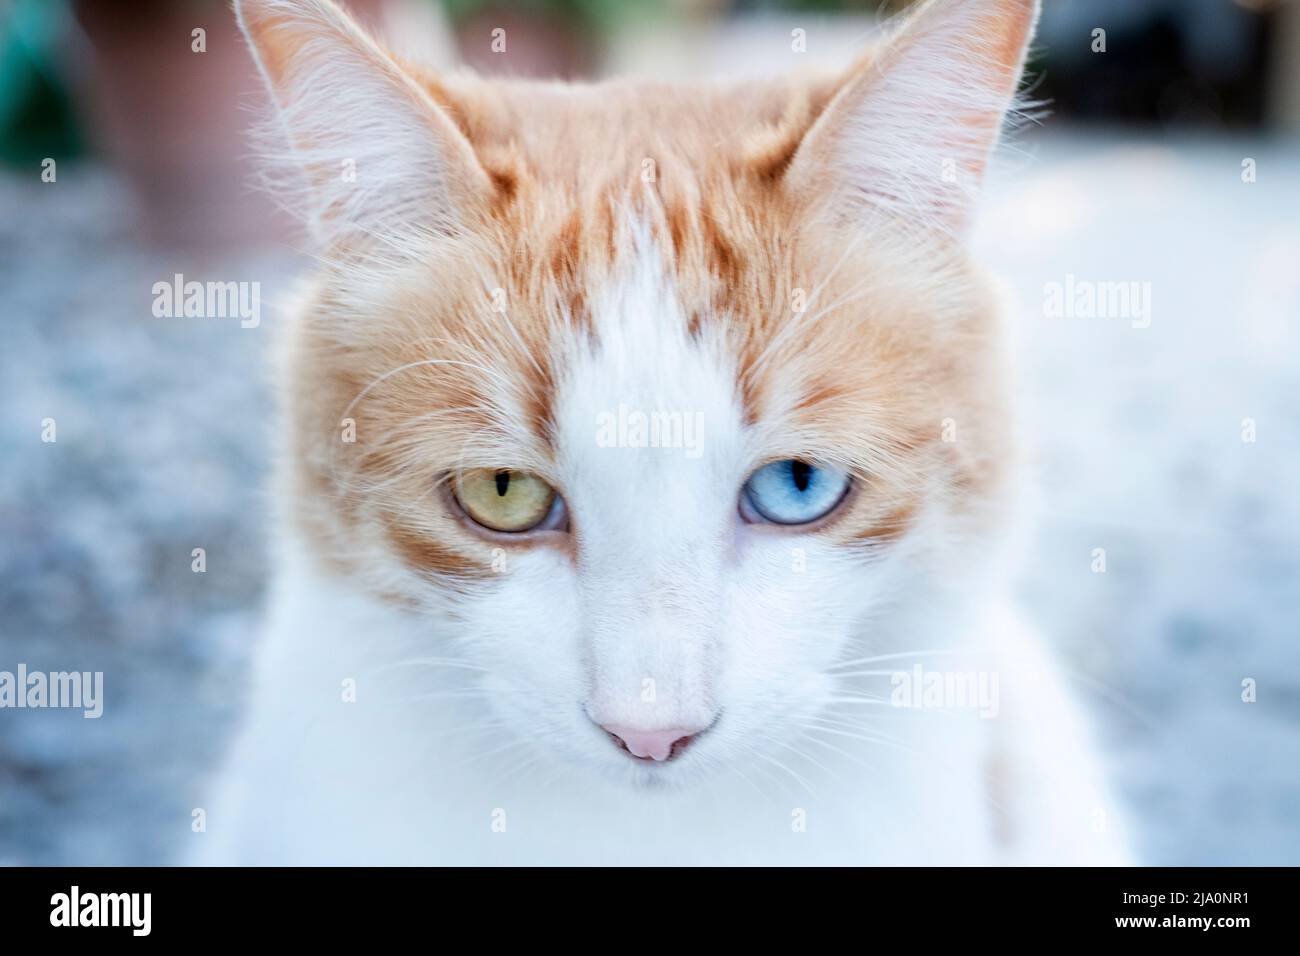 Un chat de tabby domestique au gingembre et blanc avec des yeux de différentes couleurs, connu sous le nom d'hétérochromie sectorielle. L'un des yeux est bleu tandis que l'autre est vert Banque D'Images